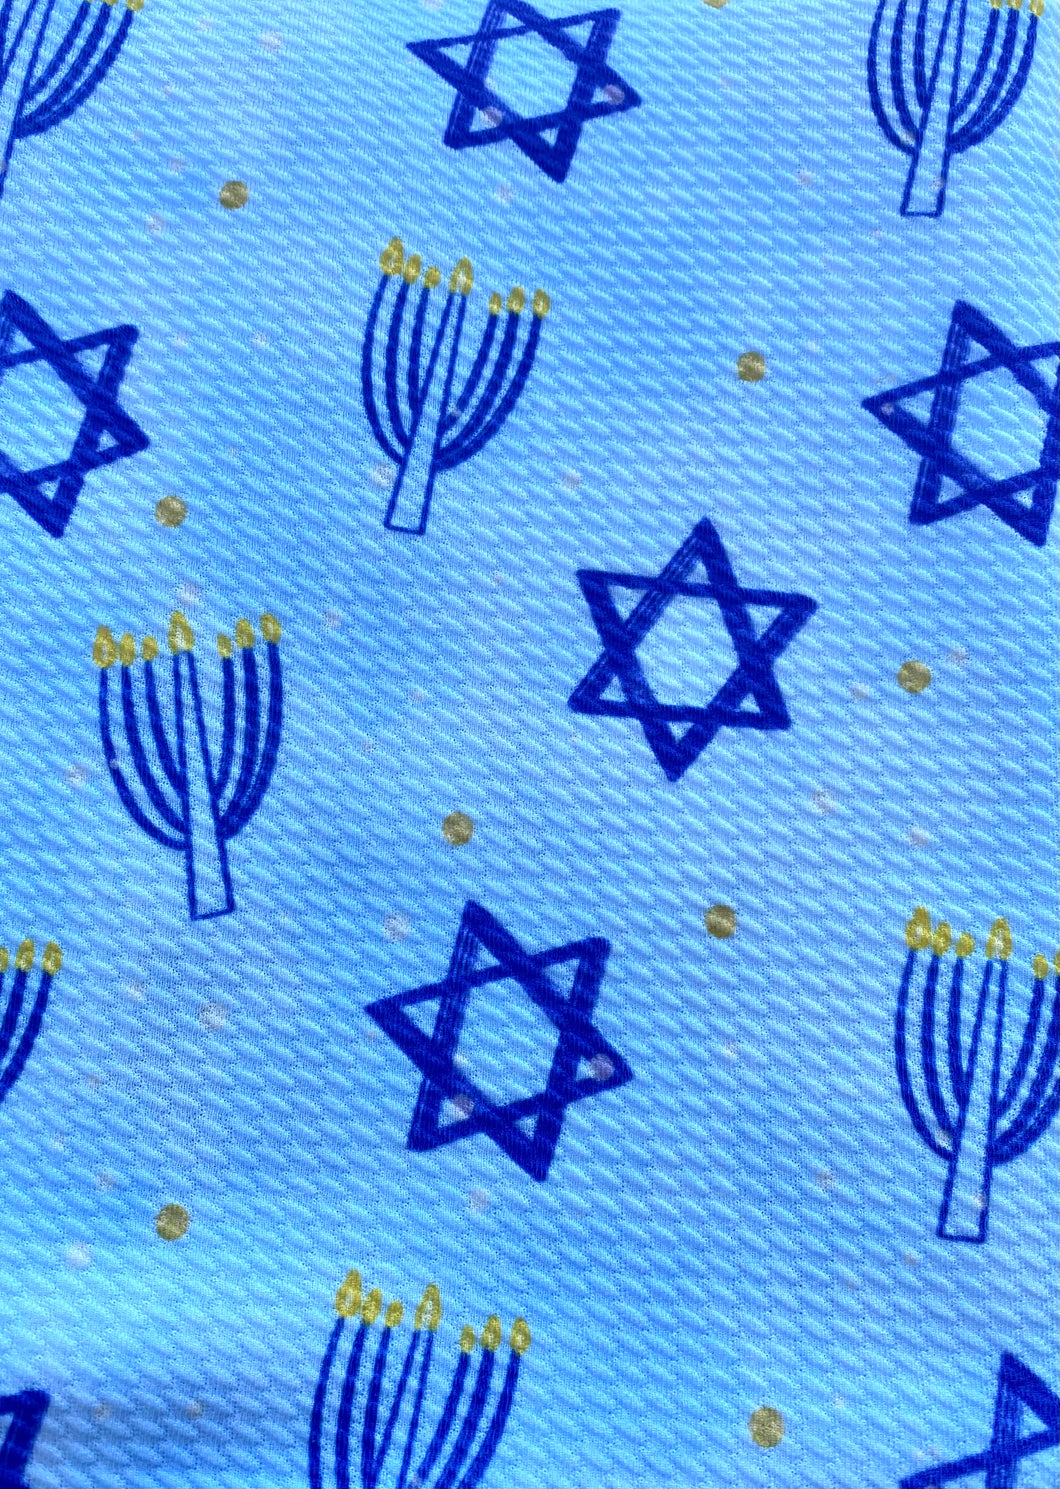 Happy Hanukkah Bow